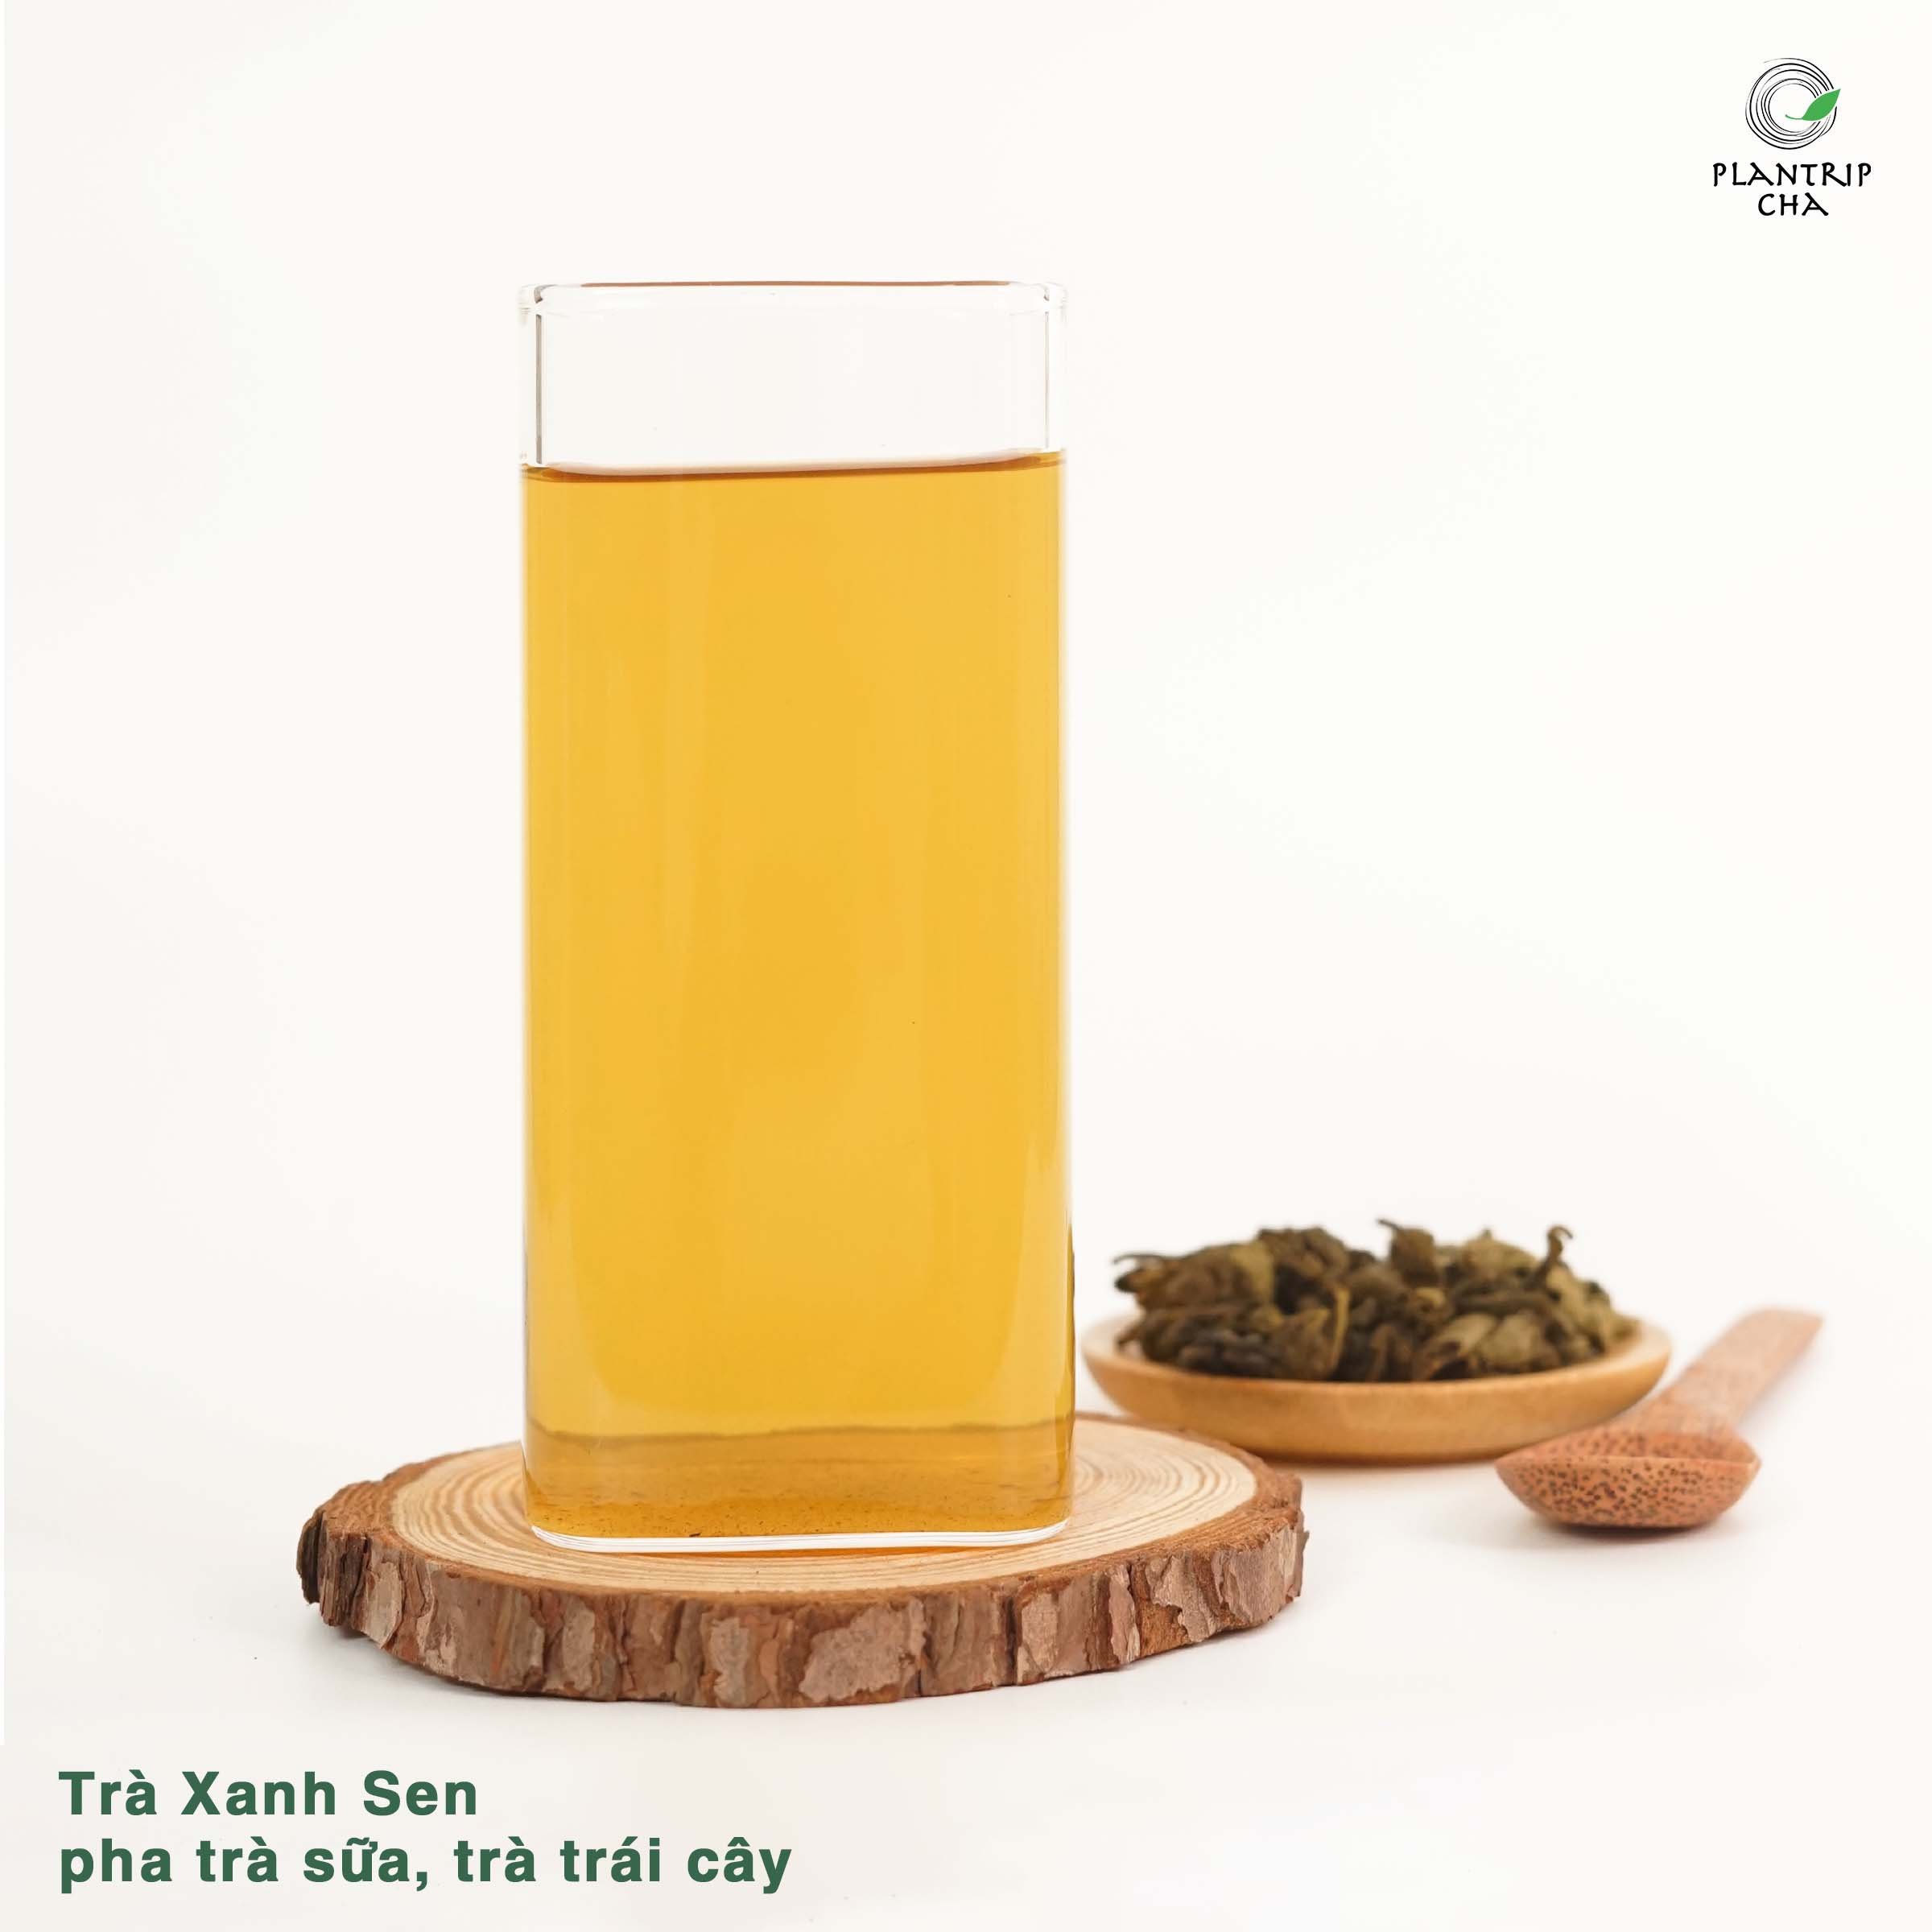 Trà Xanh Sen AT pha trà sữa, trà trái cây có hương thơm độc đáo, vị trà tươi mát và màu trà trà đẹp mắt.